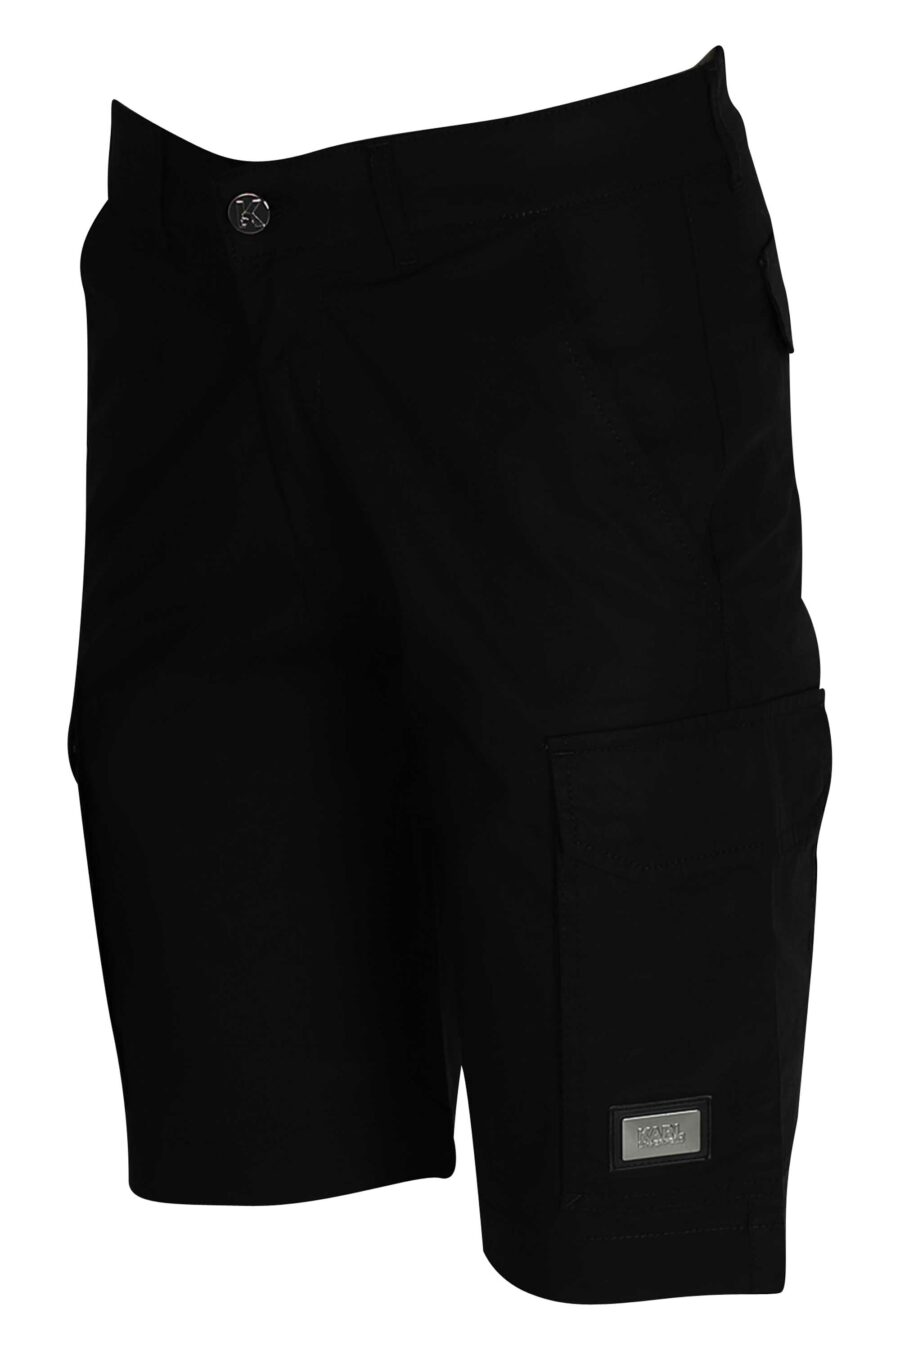 Pantalón negro corto estilo cargo con logo - 4062226166942 3